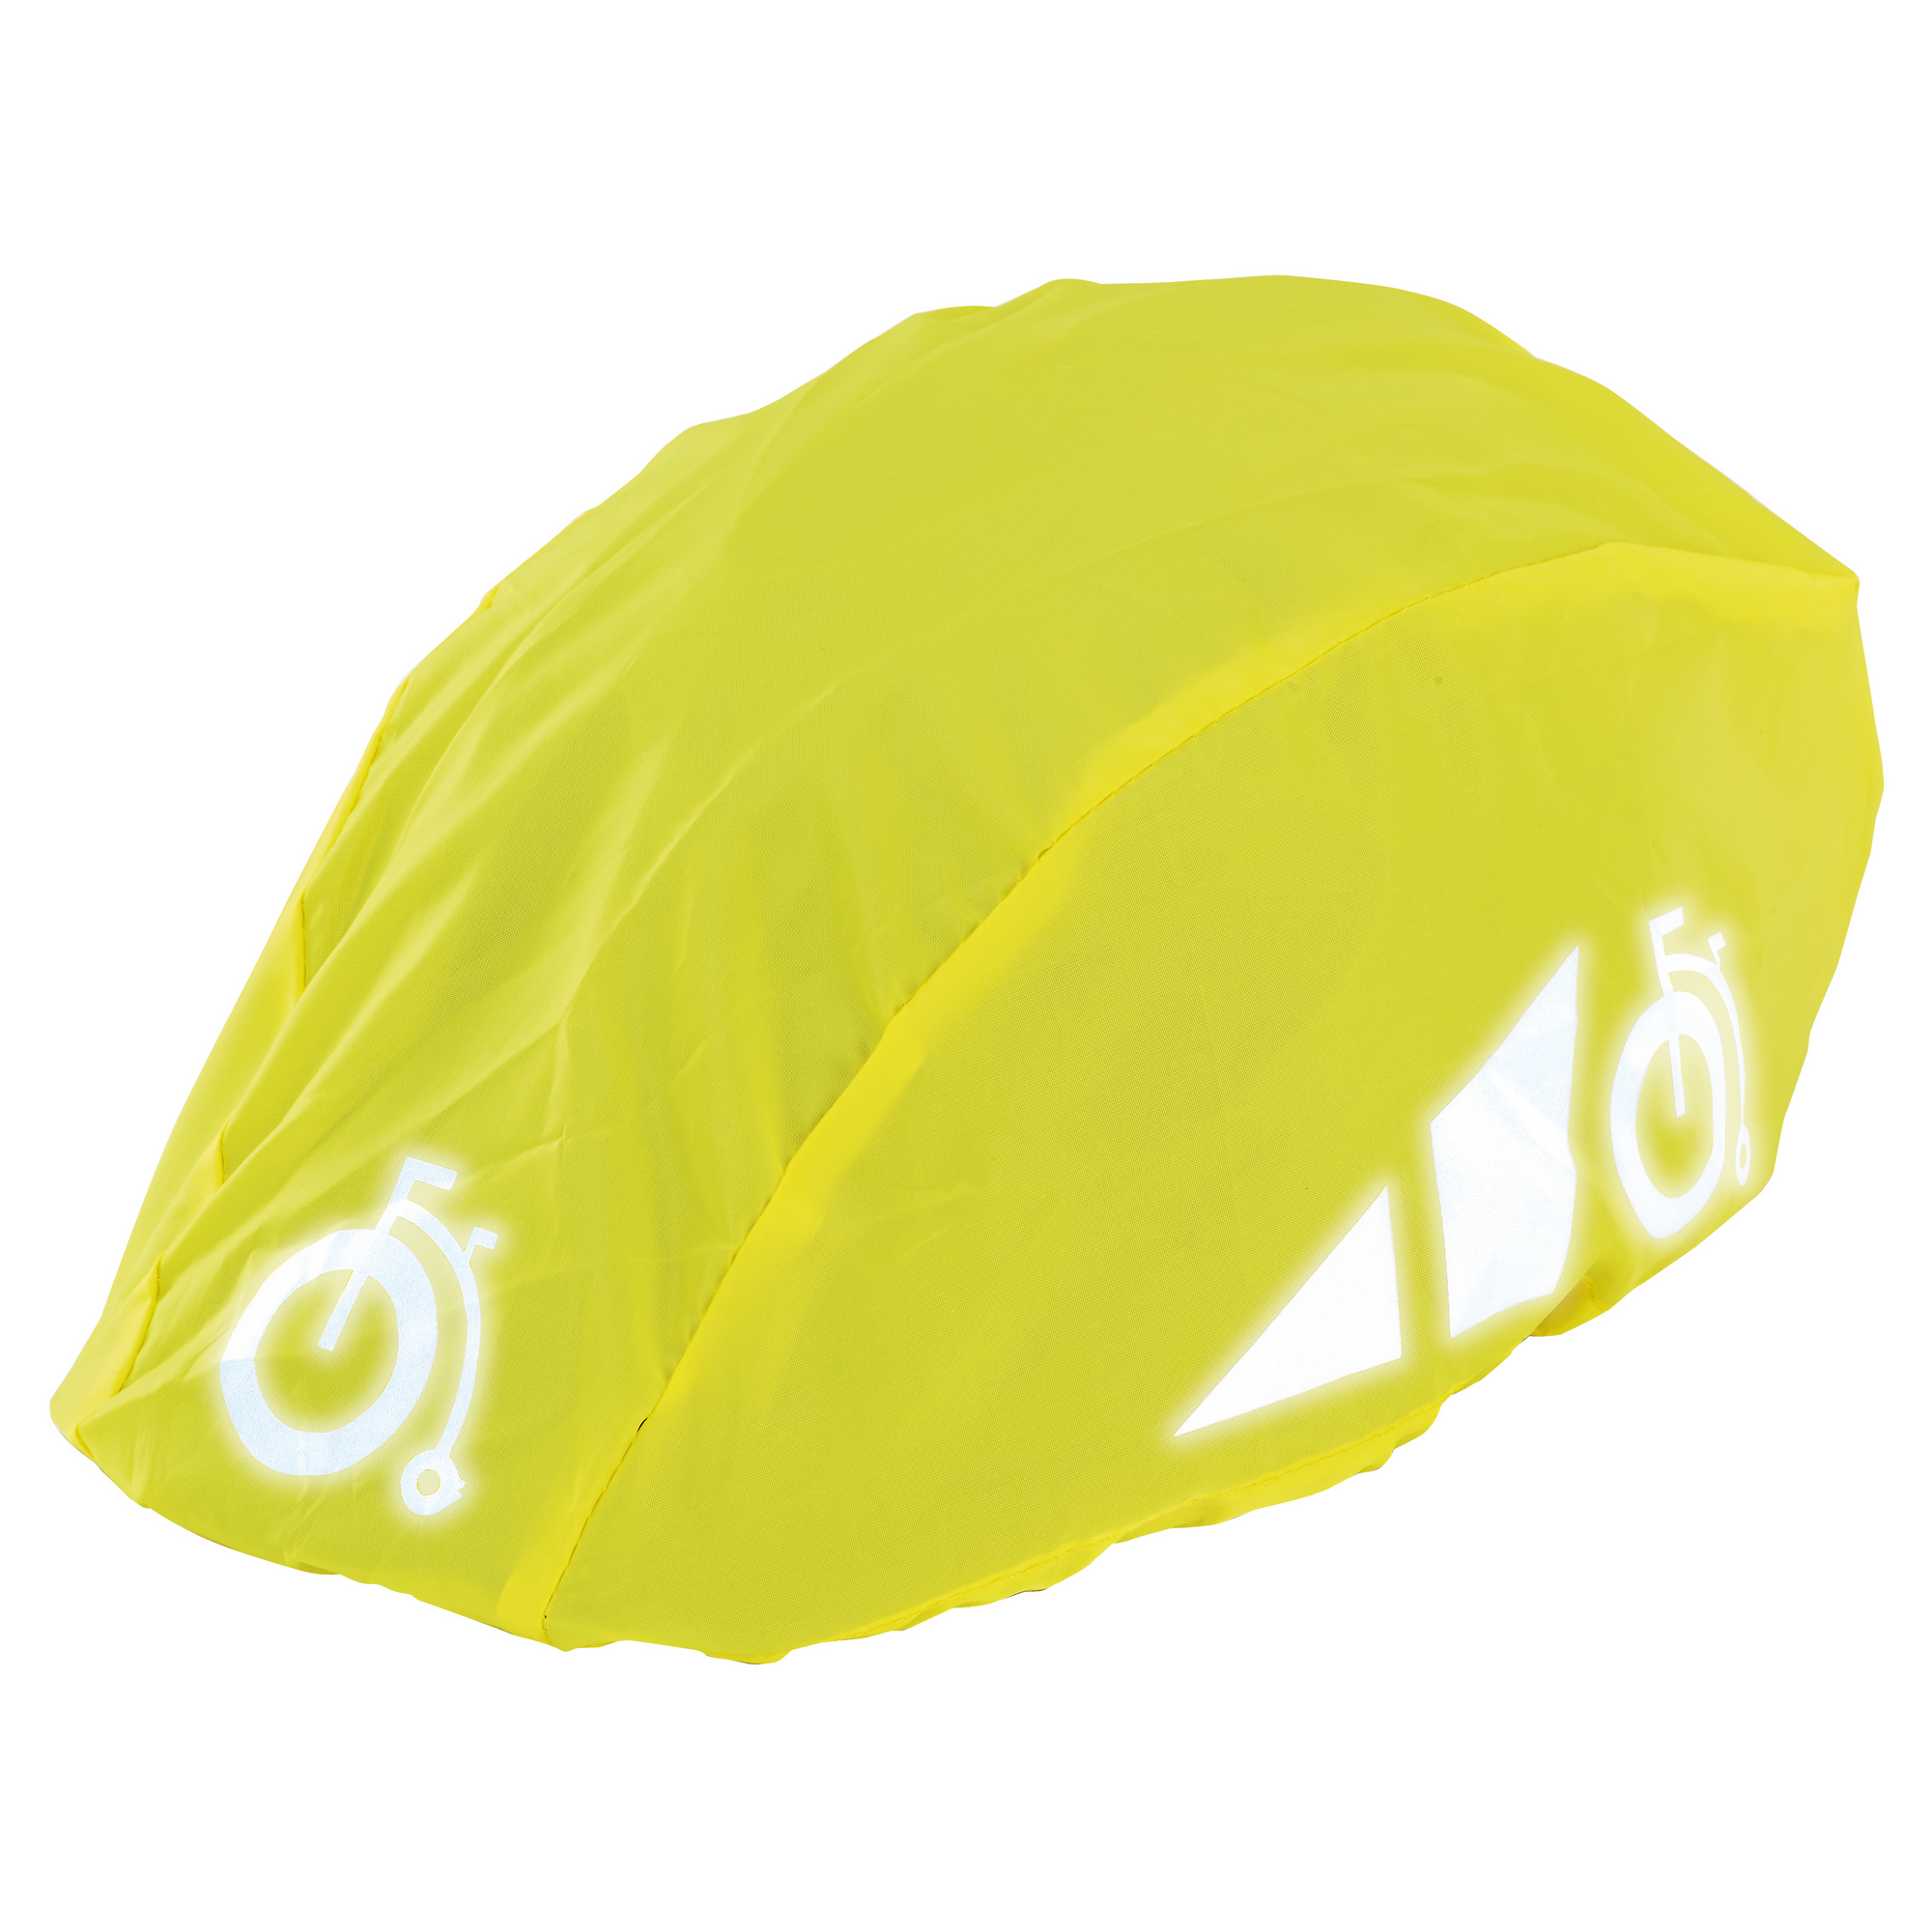 Regenüberzug für Fahrradhelm reflektierend gelb/schwarz + product picture